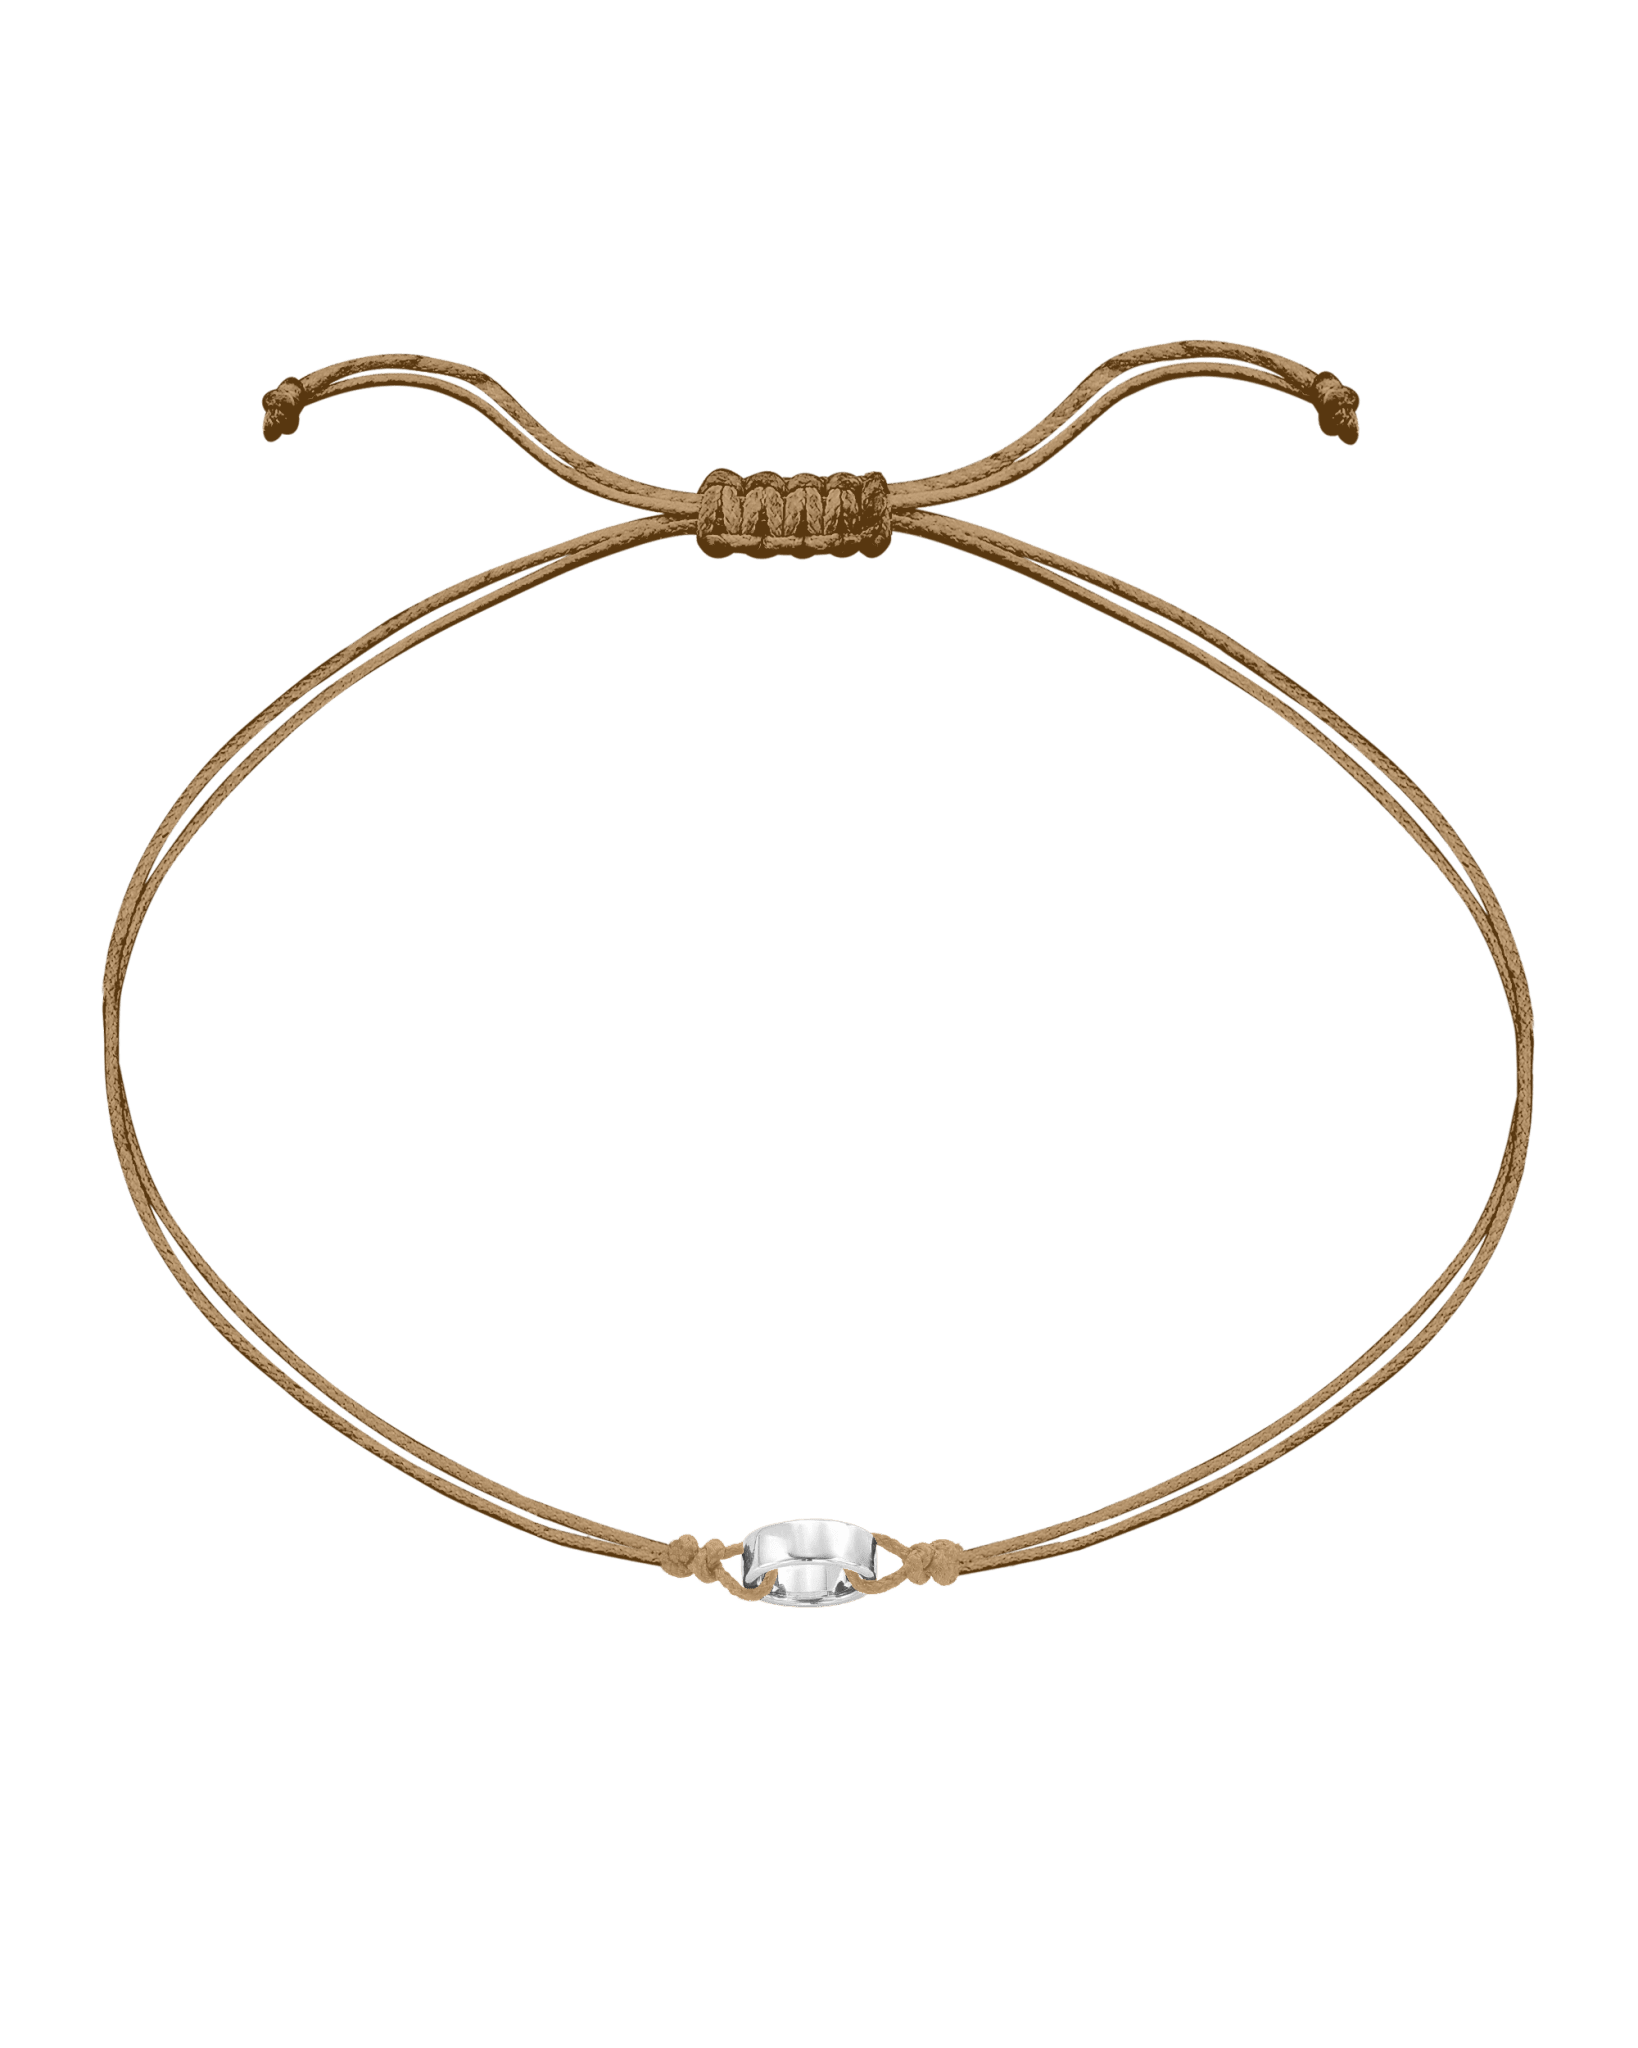 Engravable Links of Love - 925 Sterling Silver Bracelets magal-dev 1 Camel 